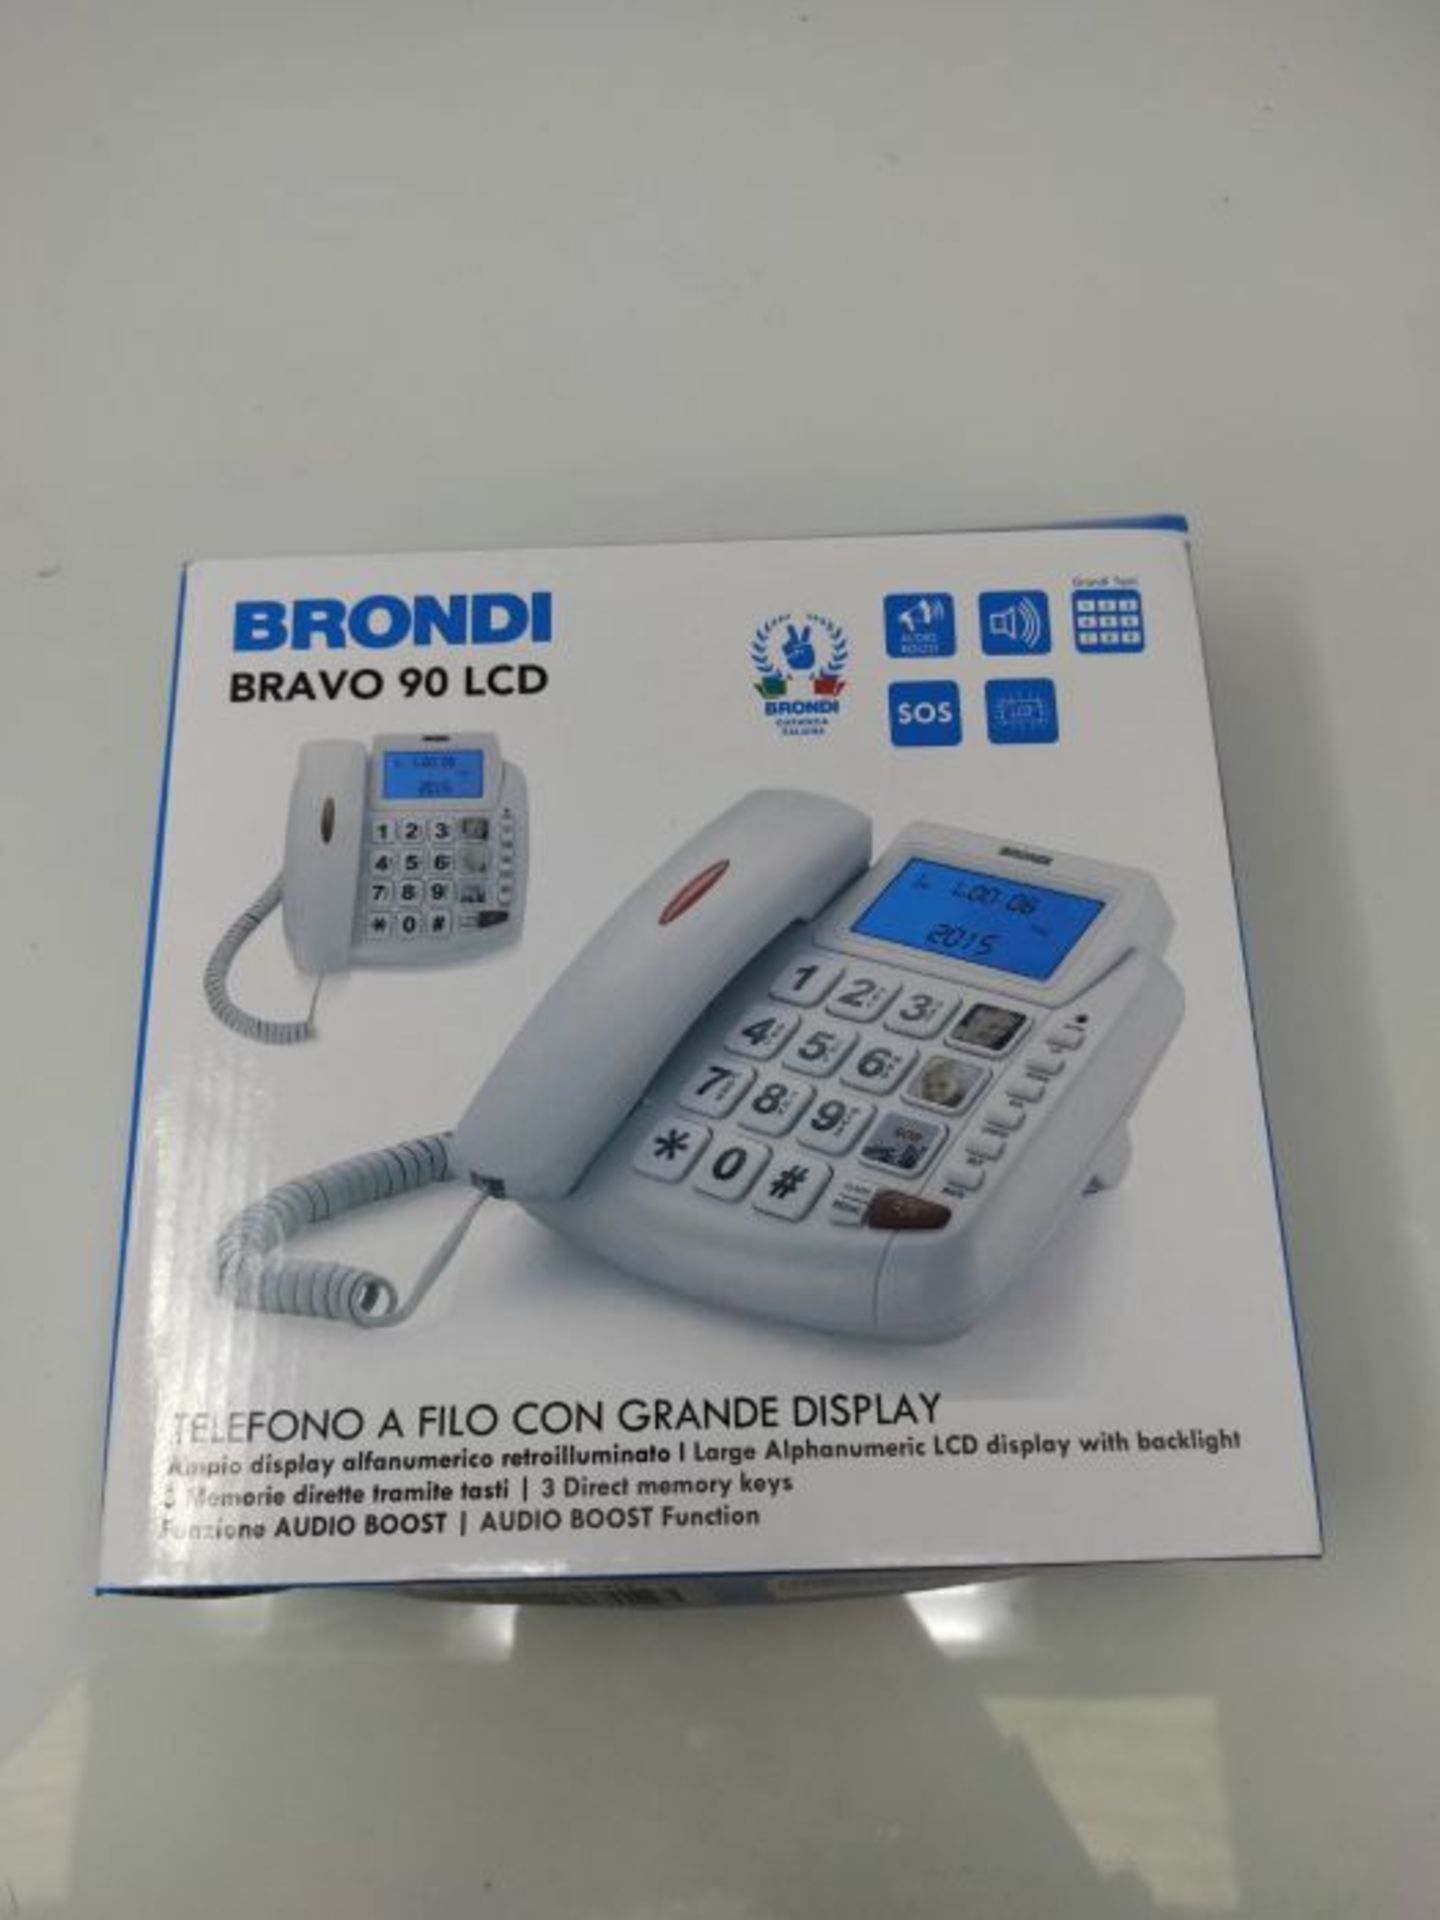 Brondi Bravo 90 LCD Telefono Fisso con tasti grandi, Bianco - Image 2 of 3